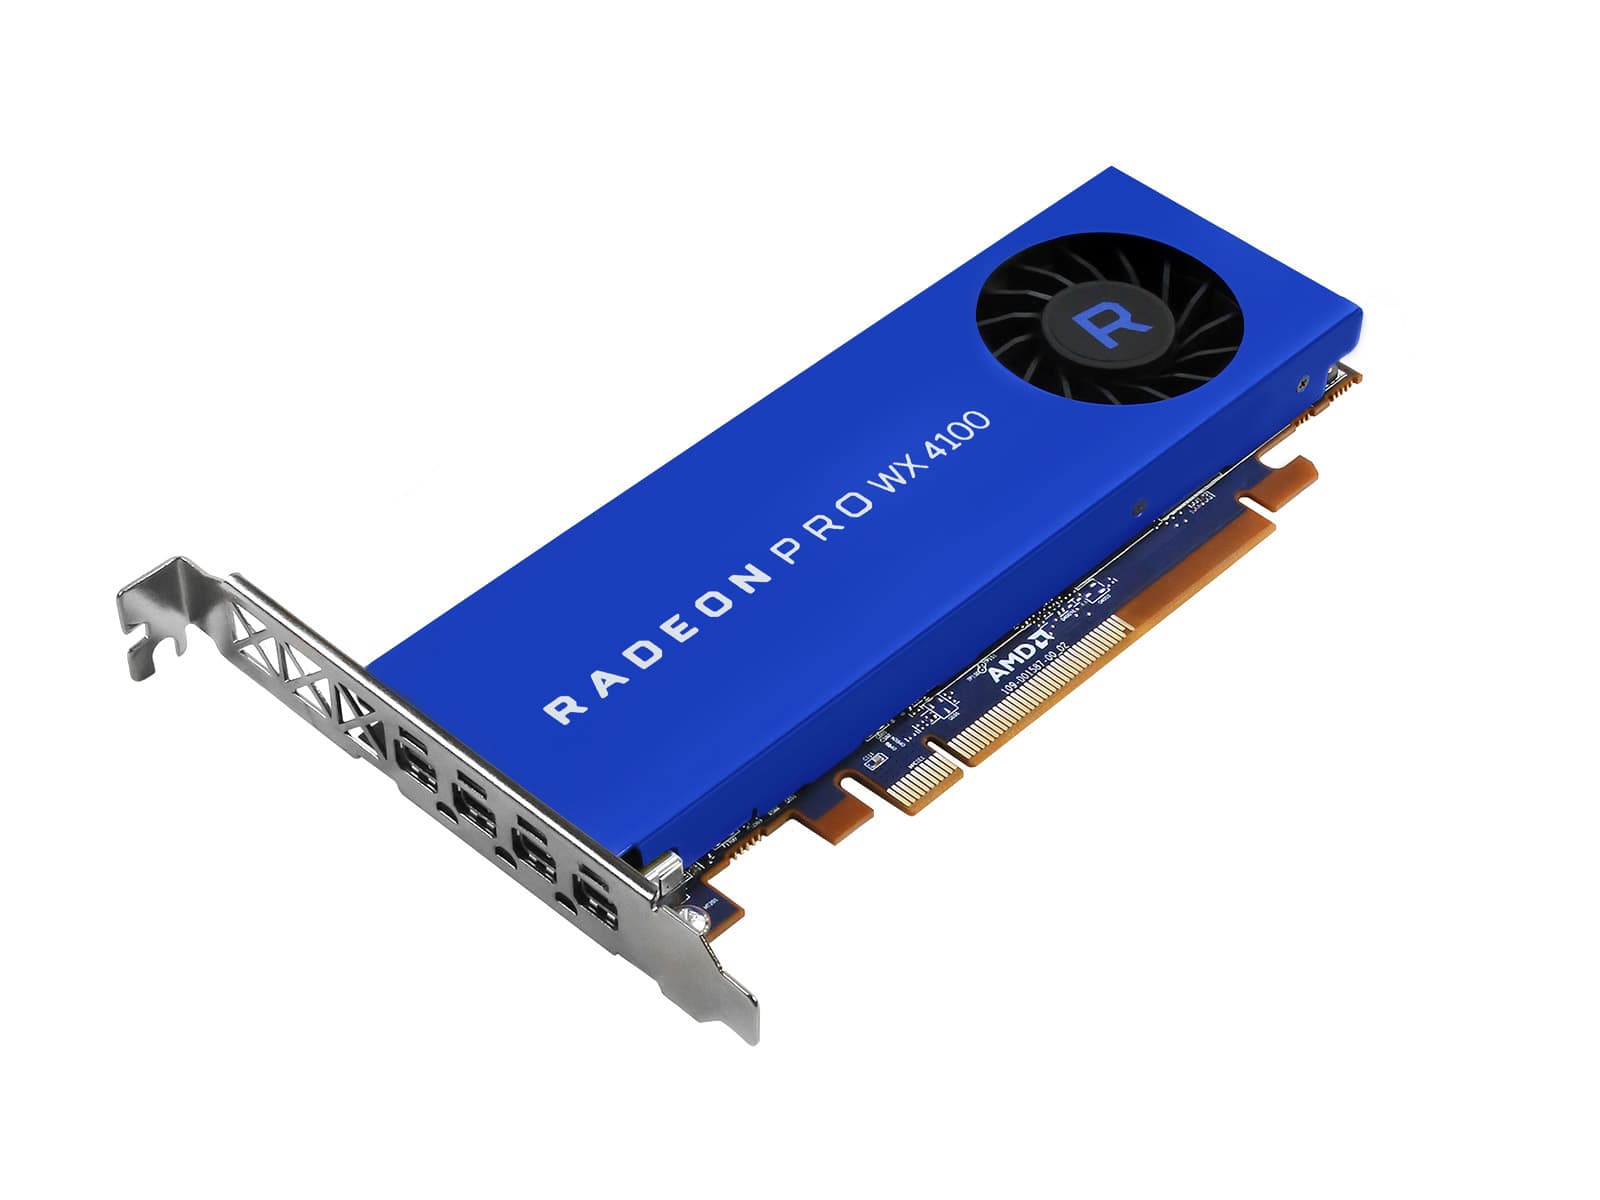 AMD Radeon Pro WX 4100 4GB グラフィックス カード (100-506008) Monitors.com